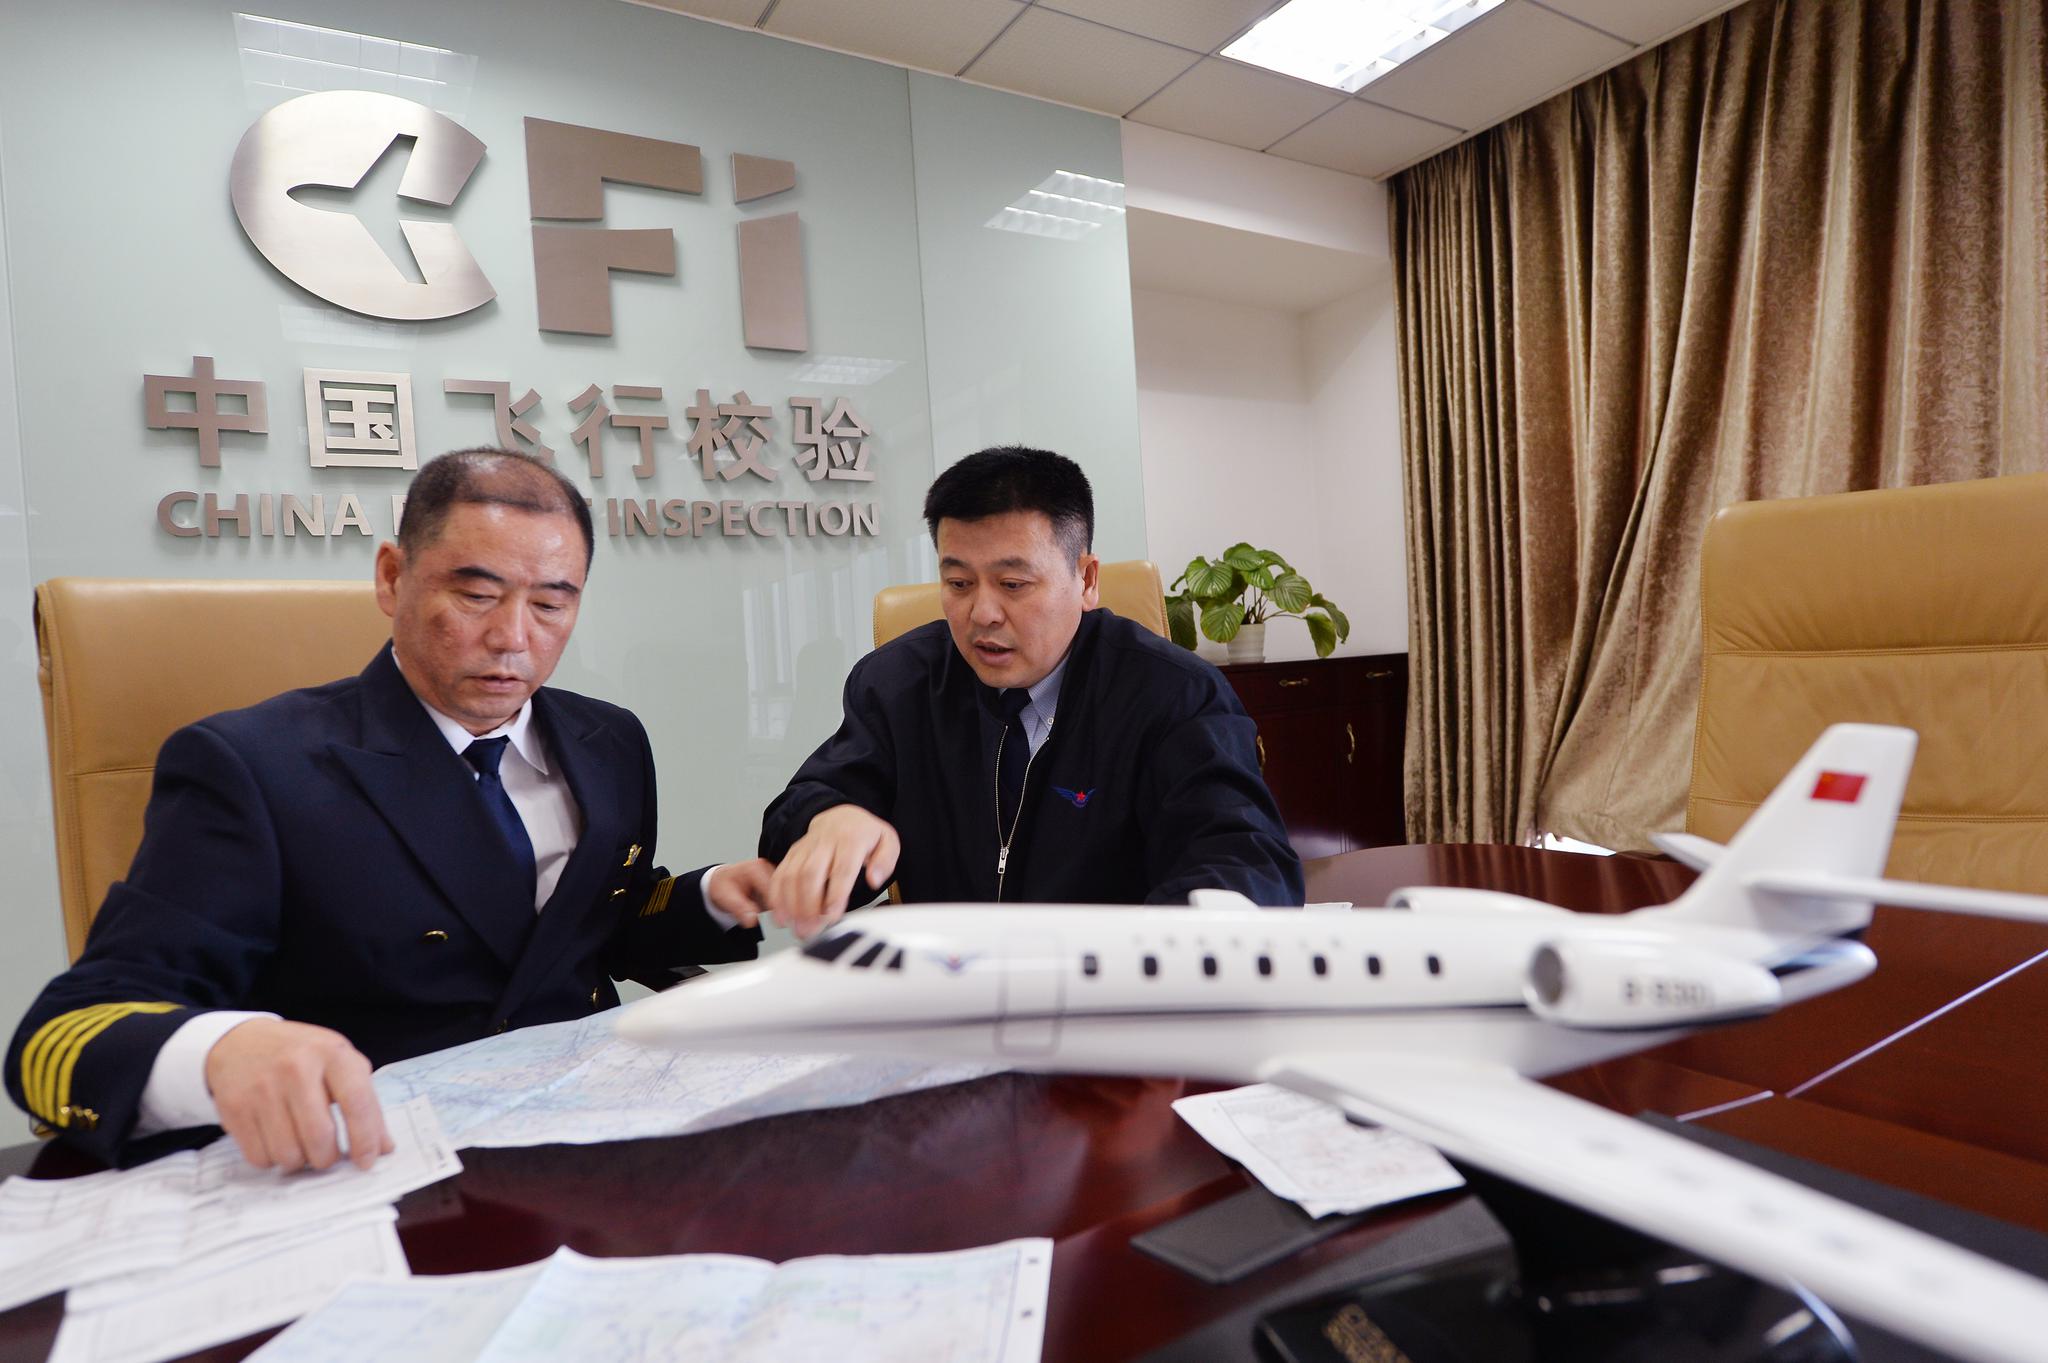 魏刚（左）和彭泉在为大兴国际机场首场校飞做准备。摄影/新京报记者 李木易